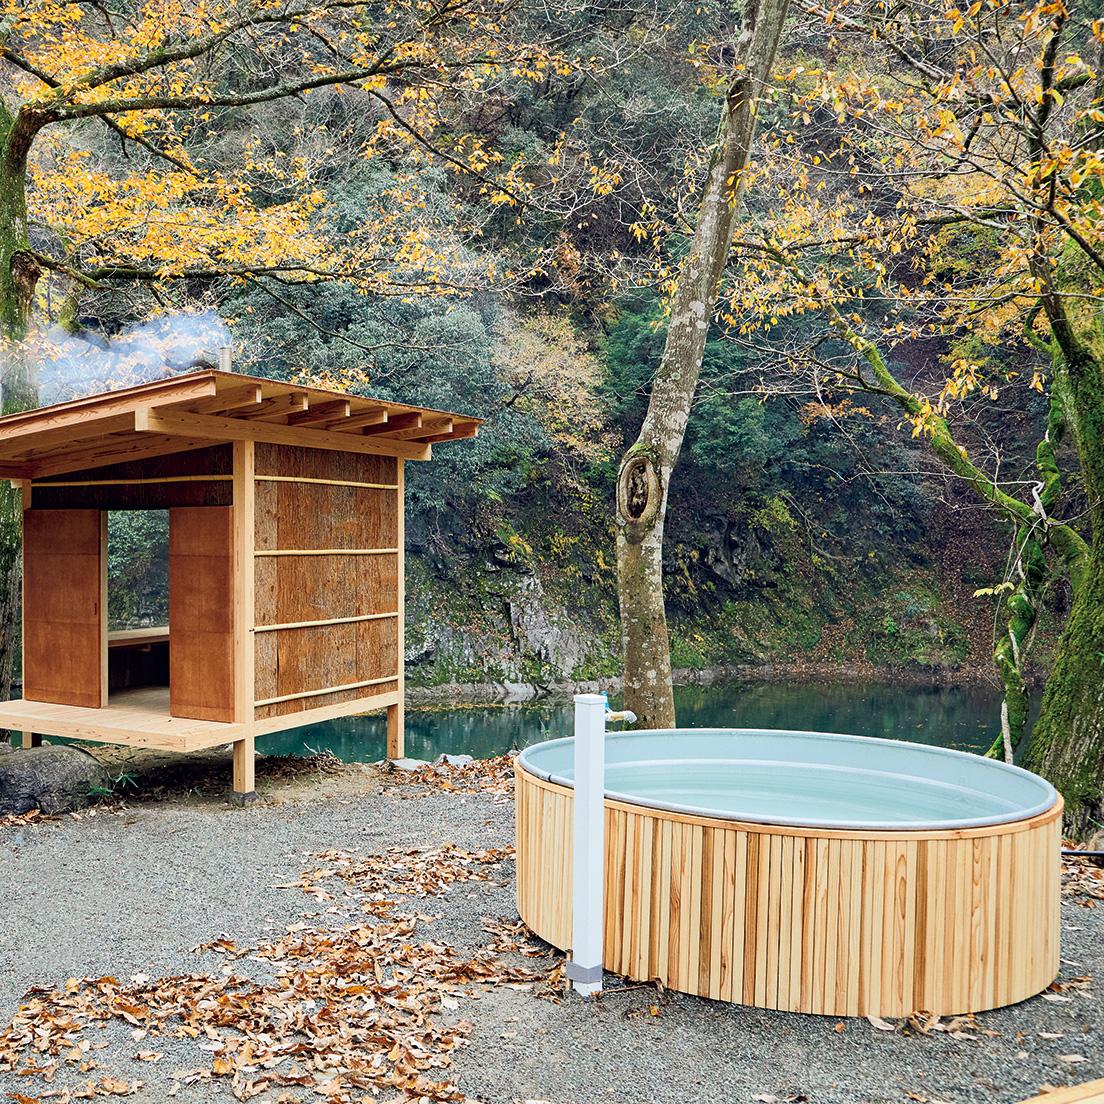 隣には水風呂も。川に飛び込む選択肢もあり。その隣には外気浴用ベンチも設置。